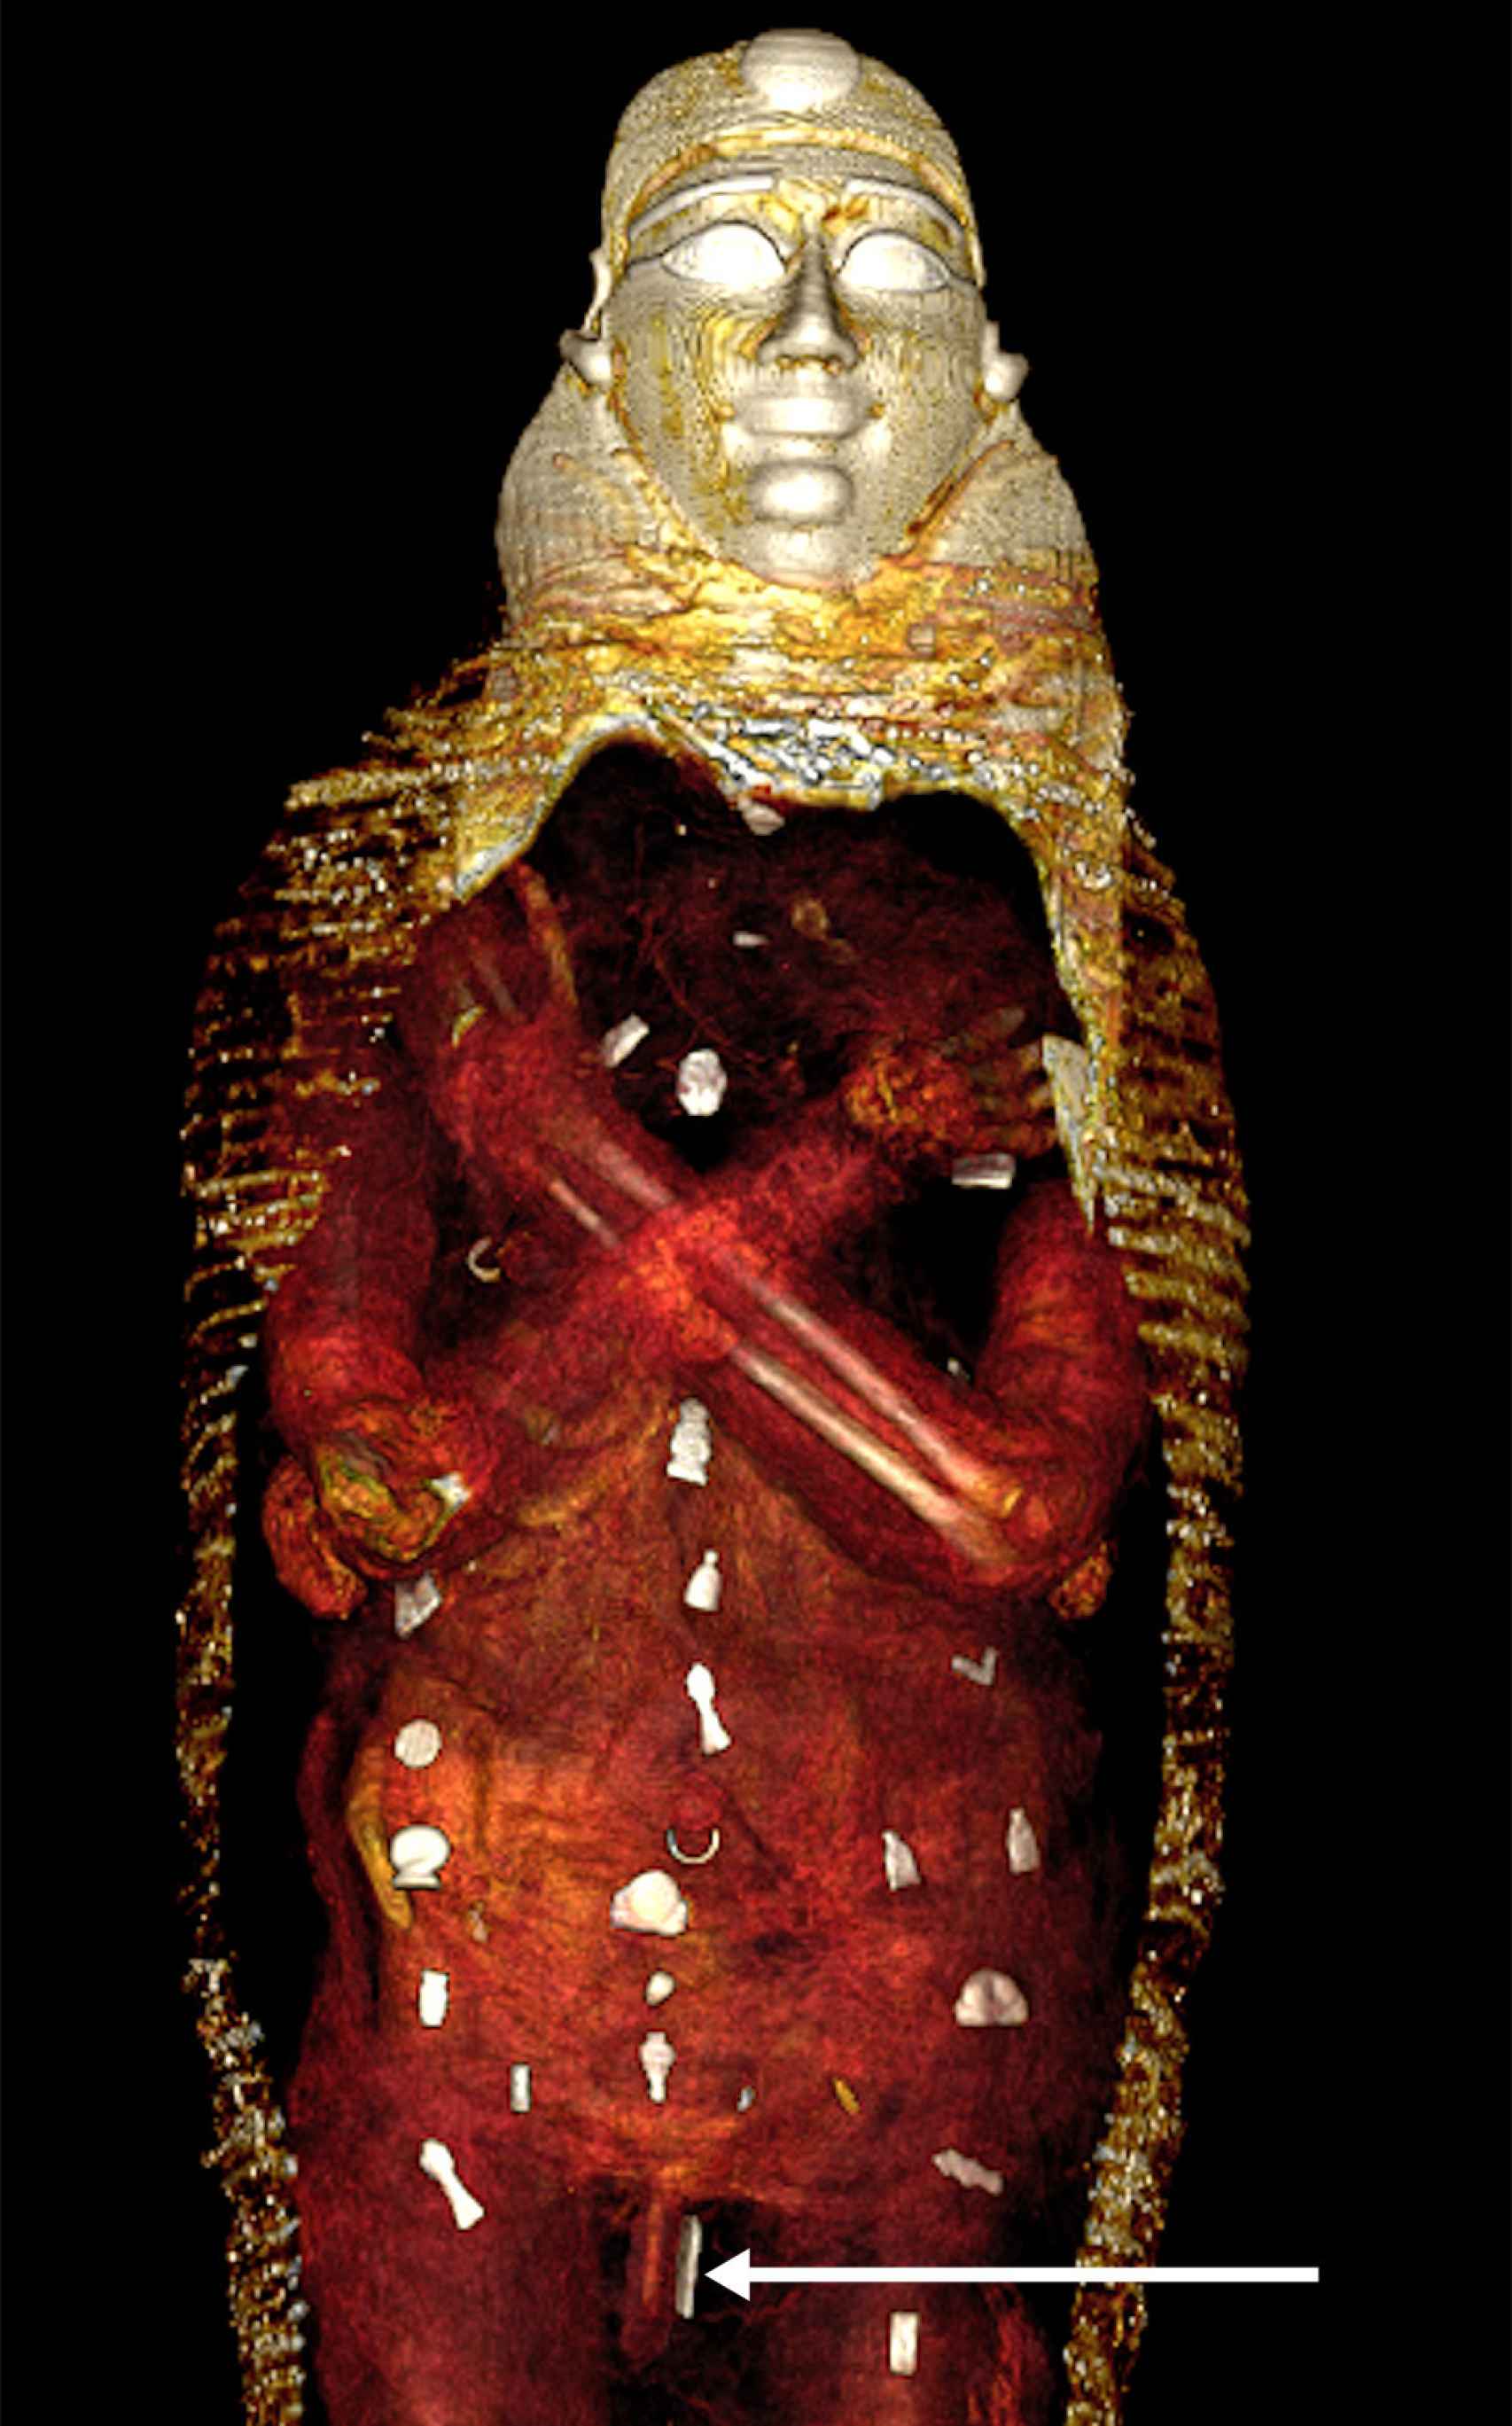 Distribución de los objetos en el cuerpo de la momia.